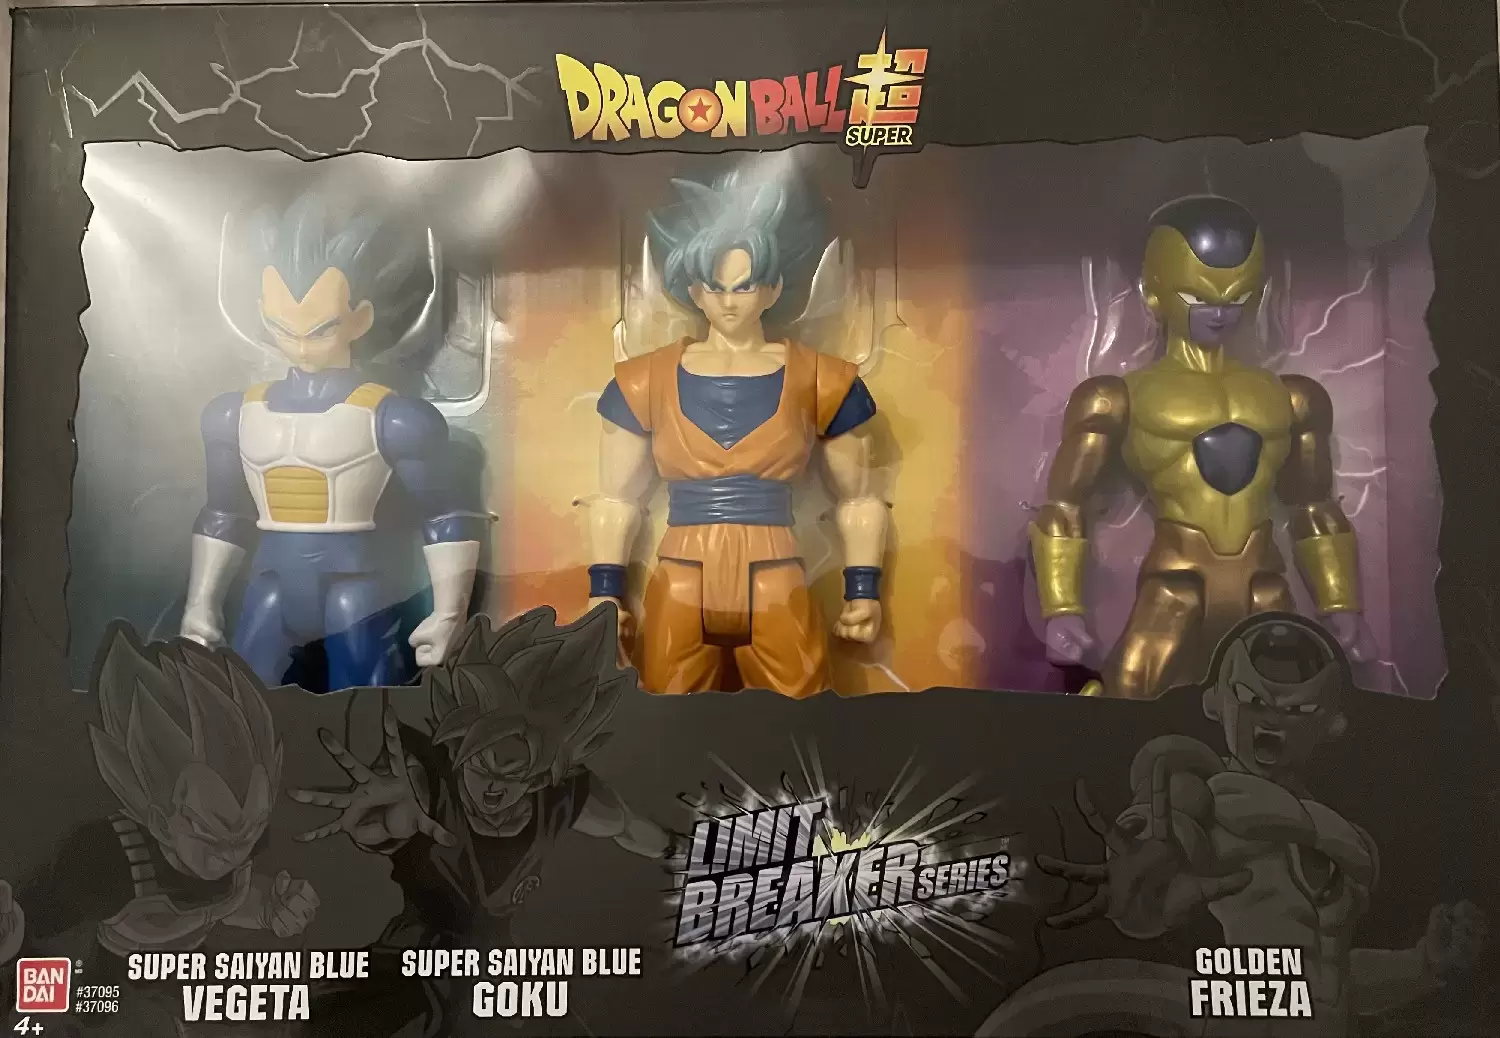 Bandai - Limit Breaker Series - Super Saiyan Blue Vegeta, Goku & Golden Freeza